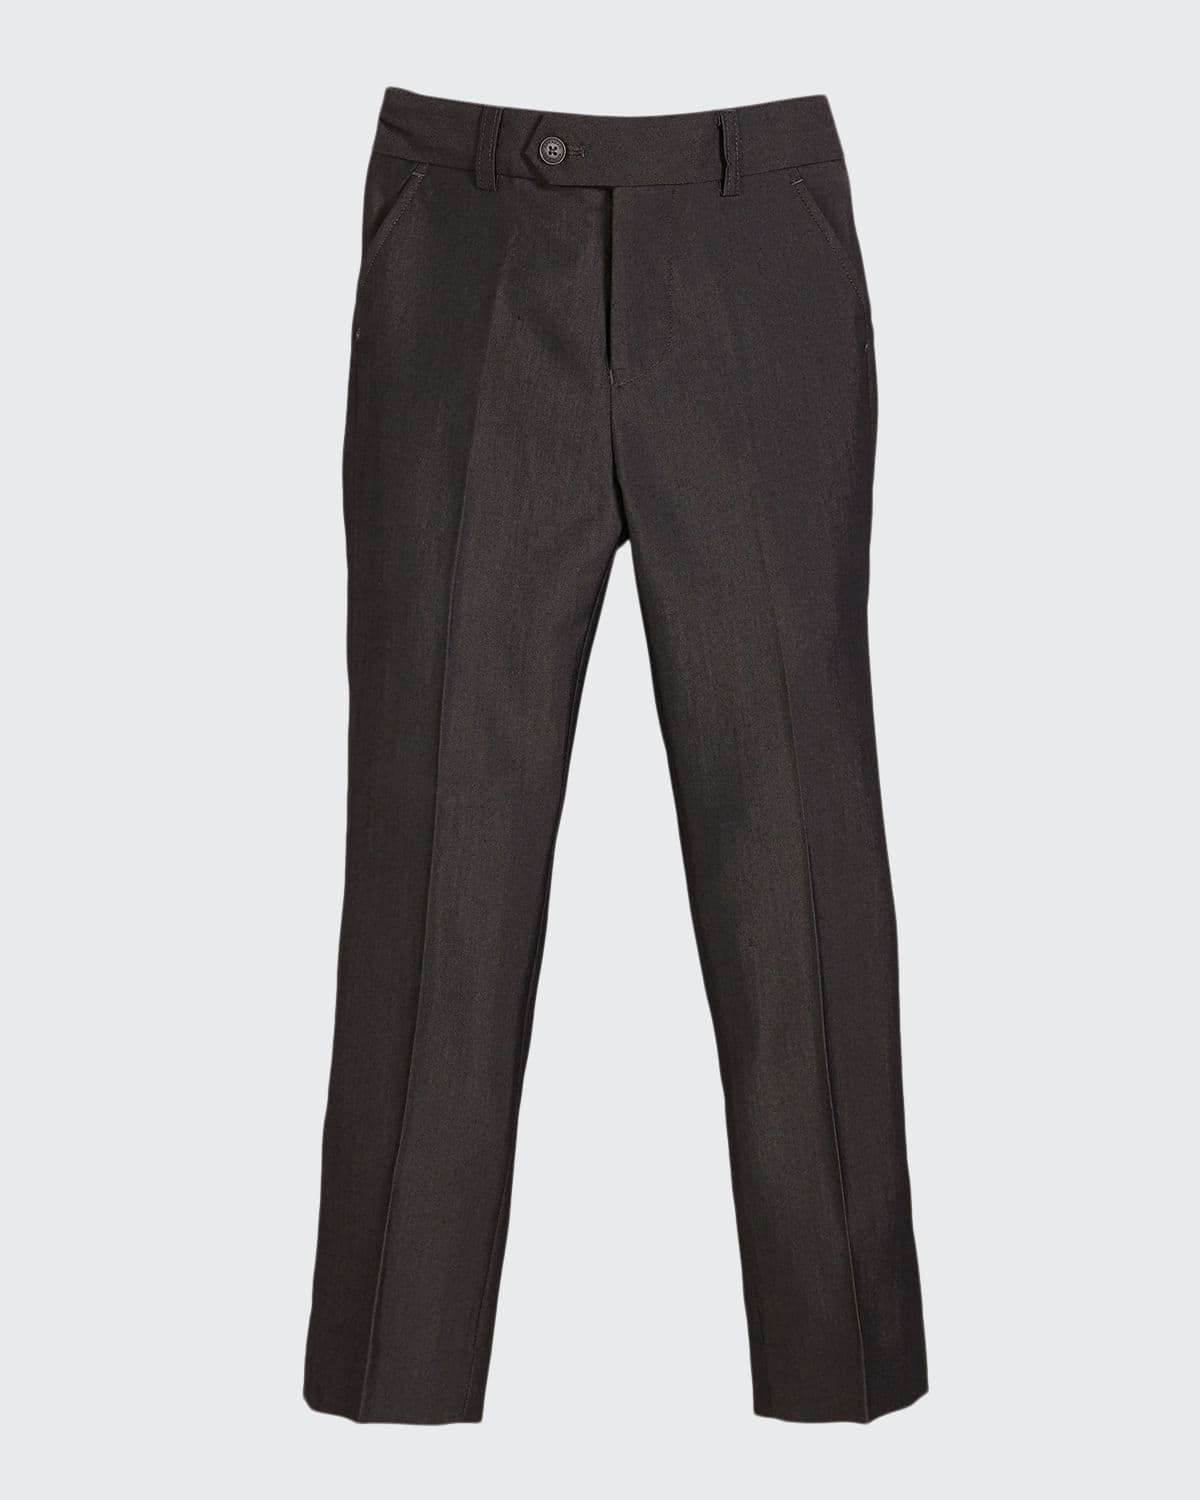 Appaman Slim Suit Pants, Charcoal, Size 4-14